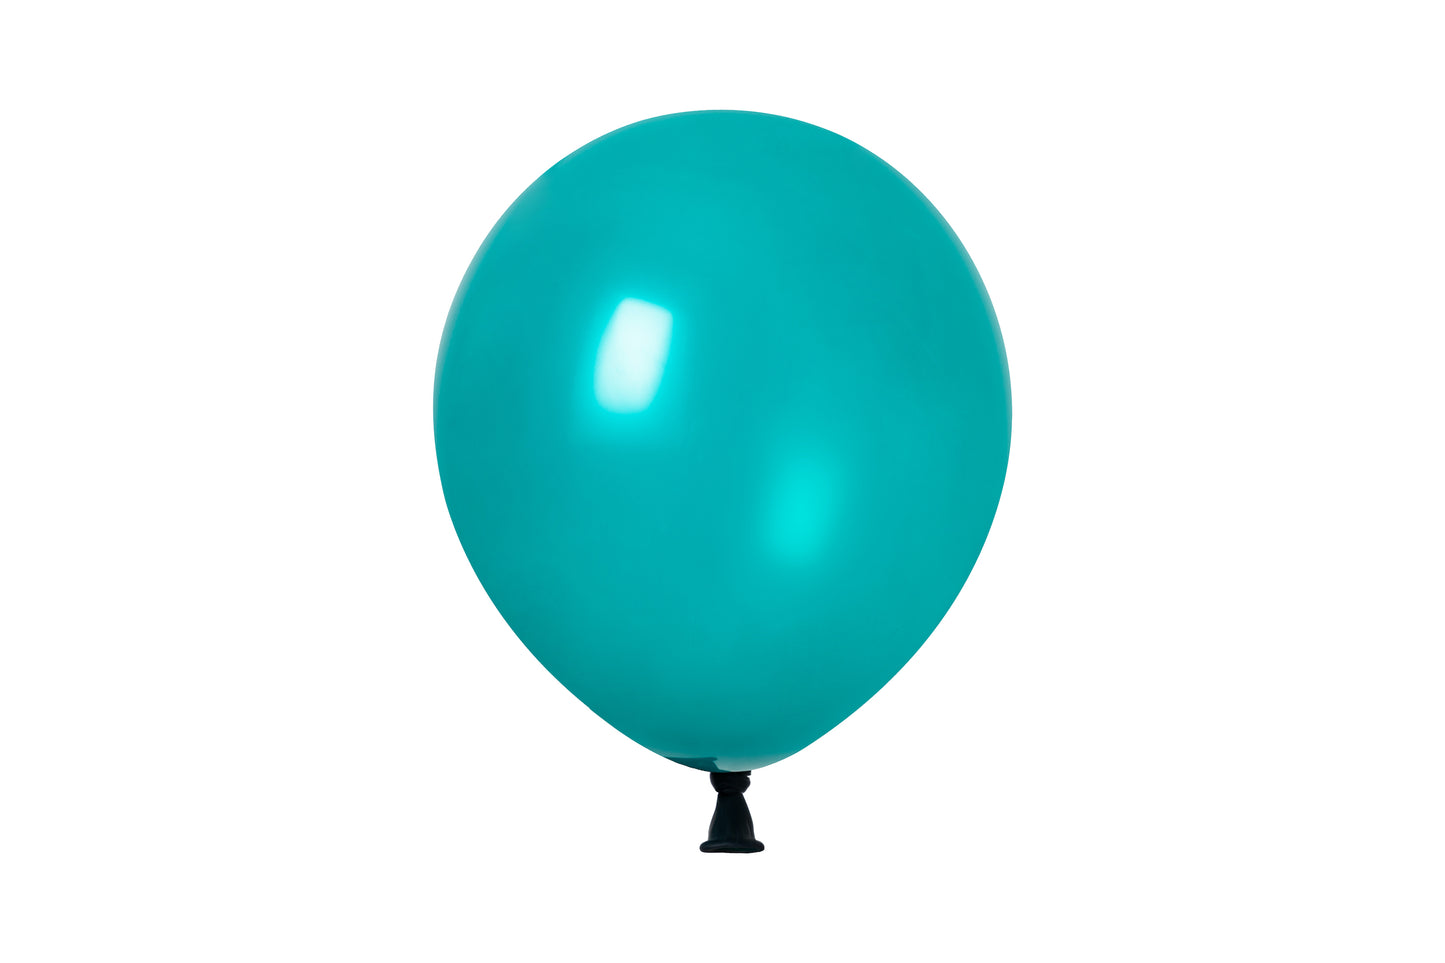 Winntex Premium 5" Latex Balloon - Turquoise - 100ct